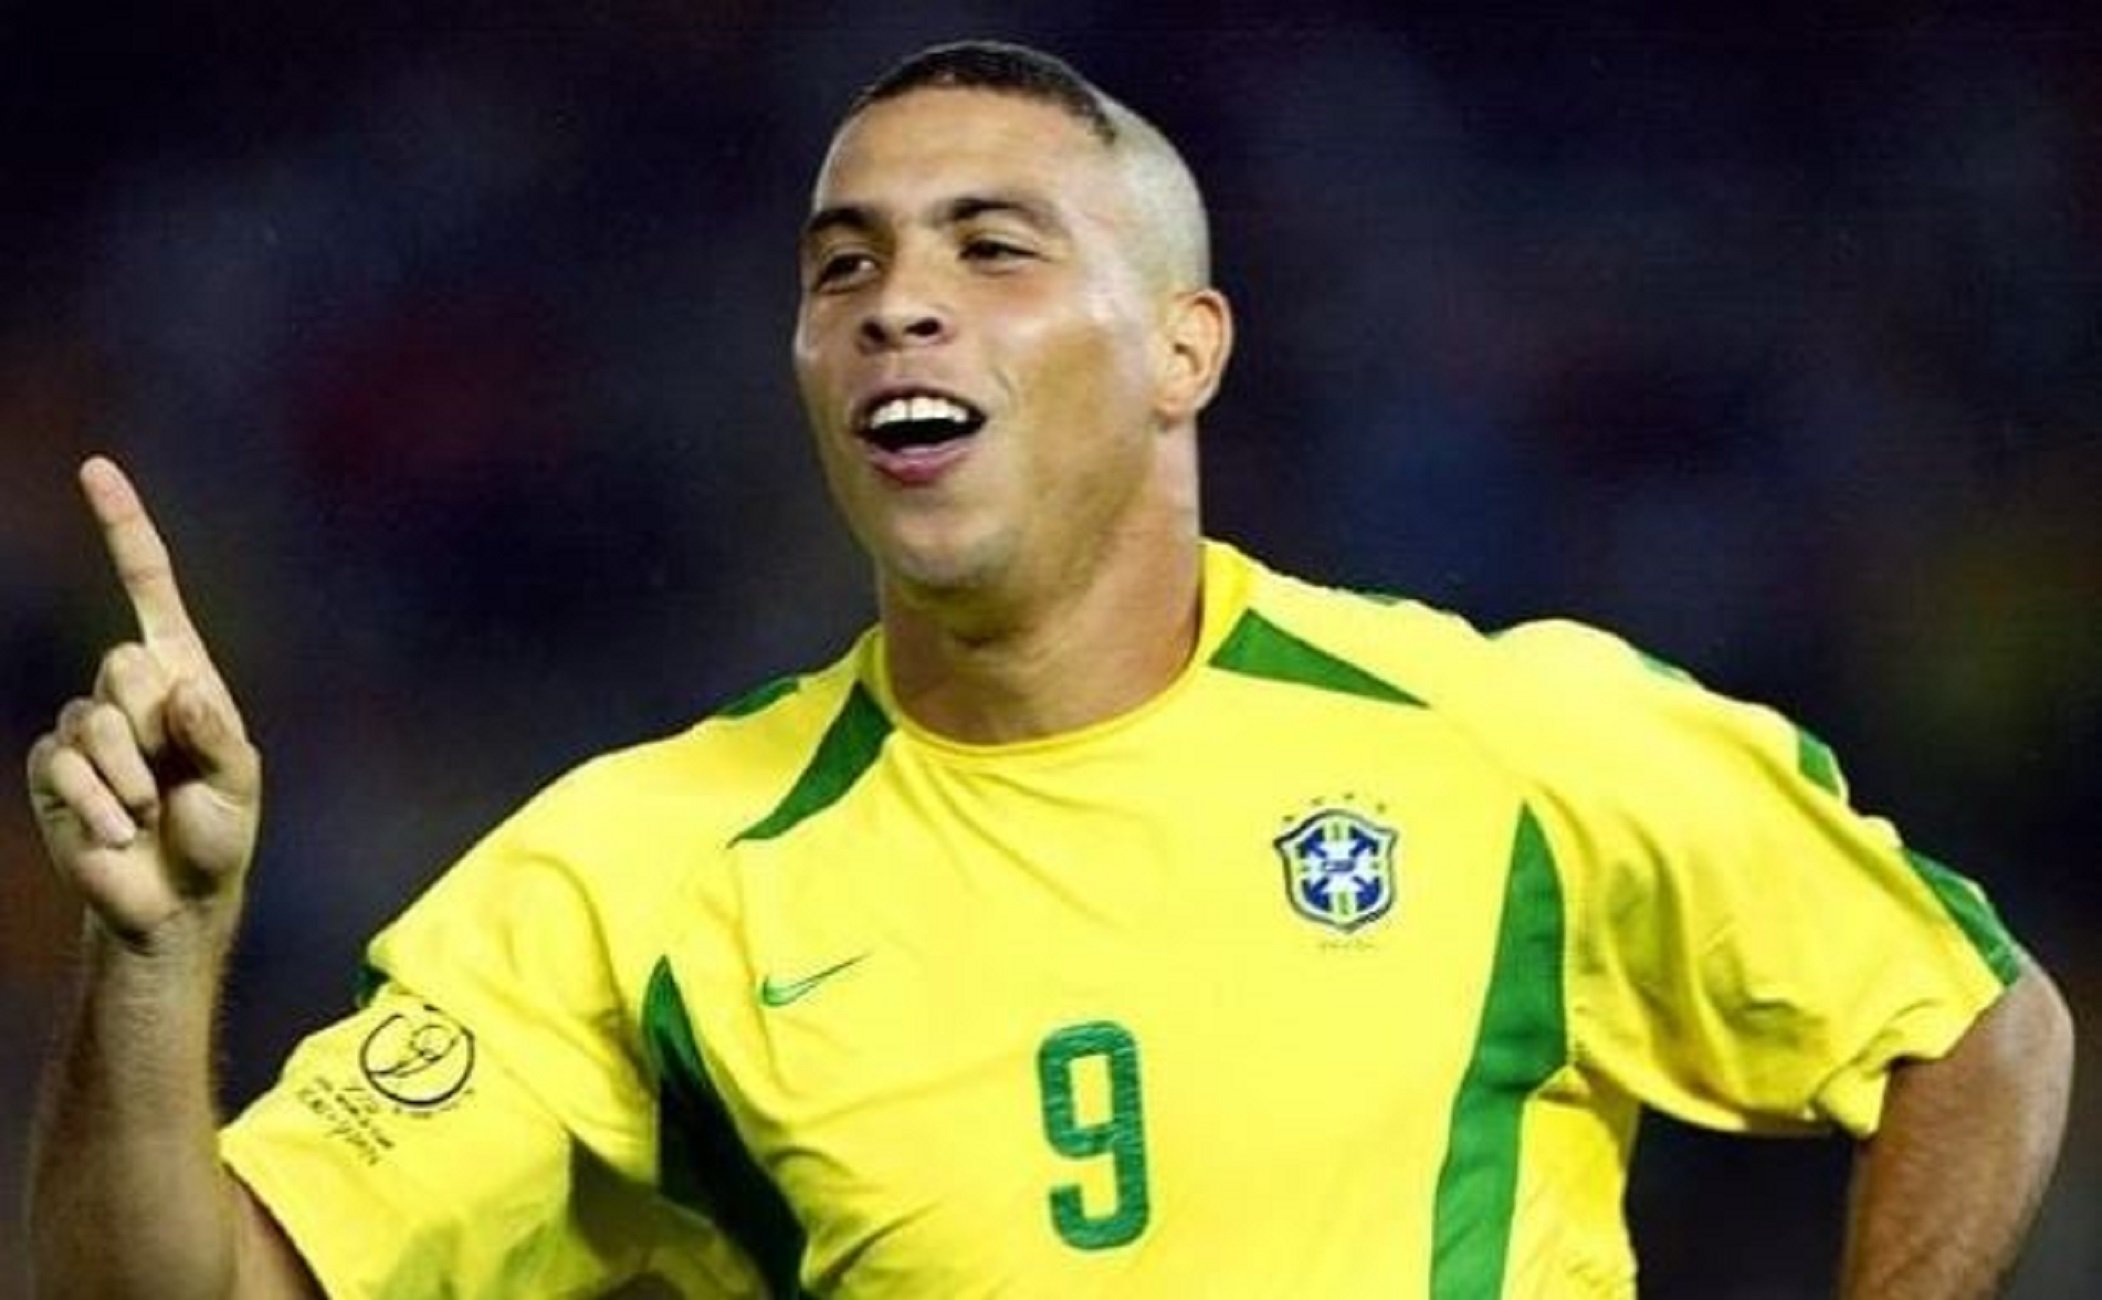 Ronaldo i el seu horrorós i copiat pentinat del Mundial 2002: "Demano perdó"